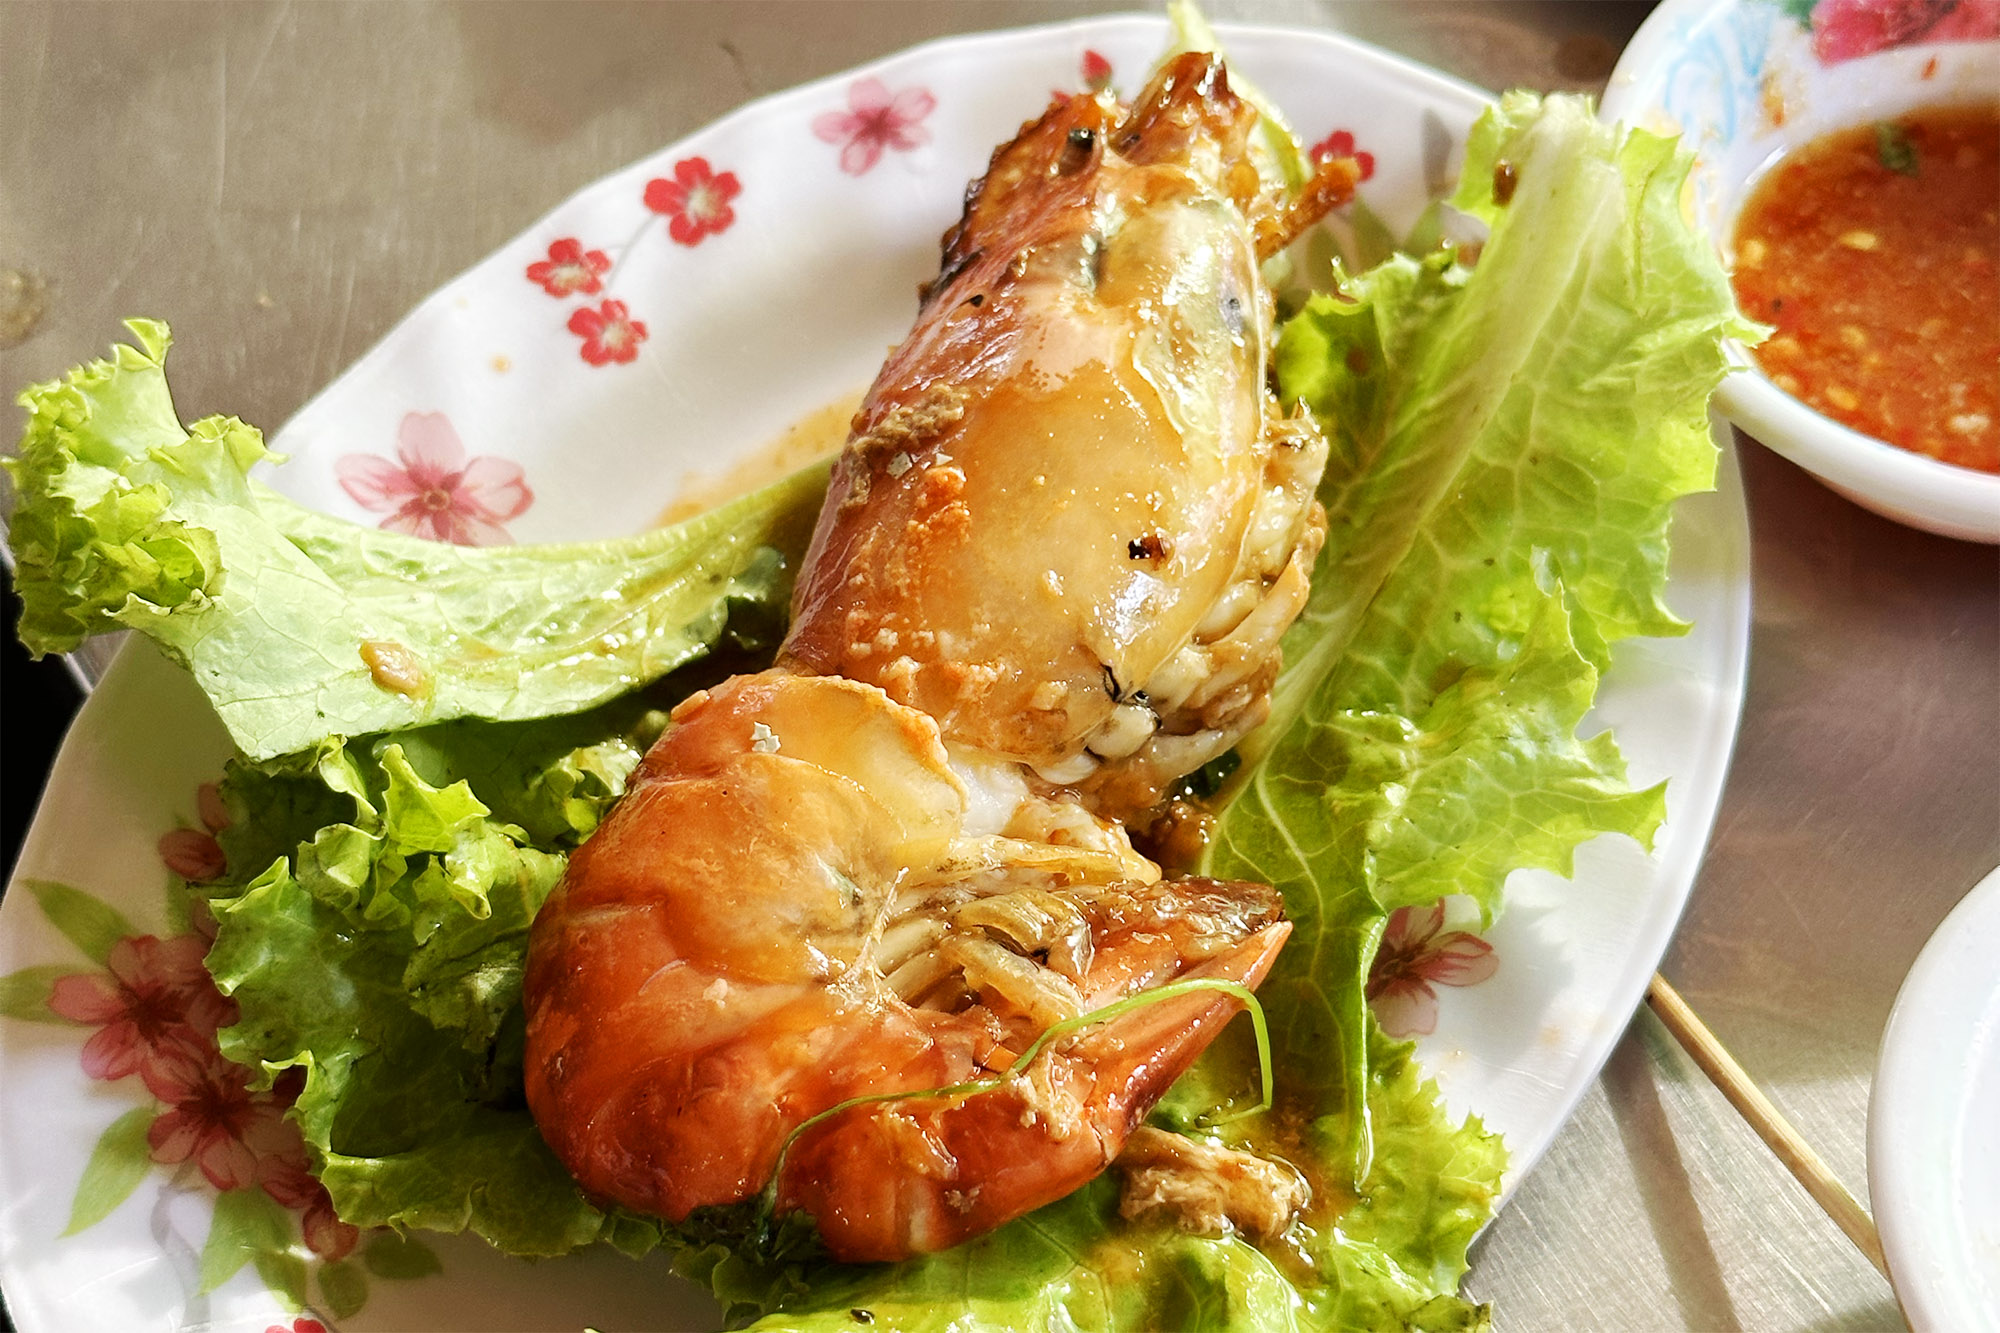 Phnom Penh Street Food: Shrimps & Prawns